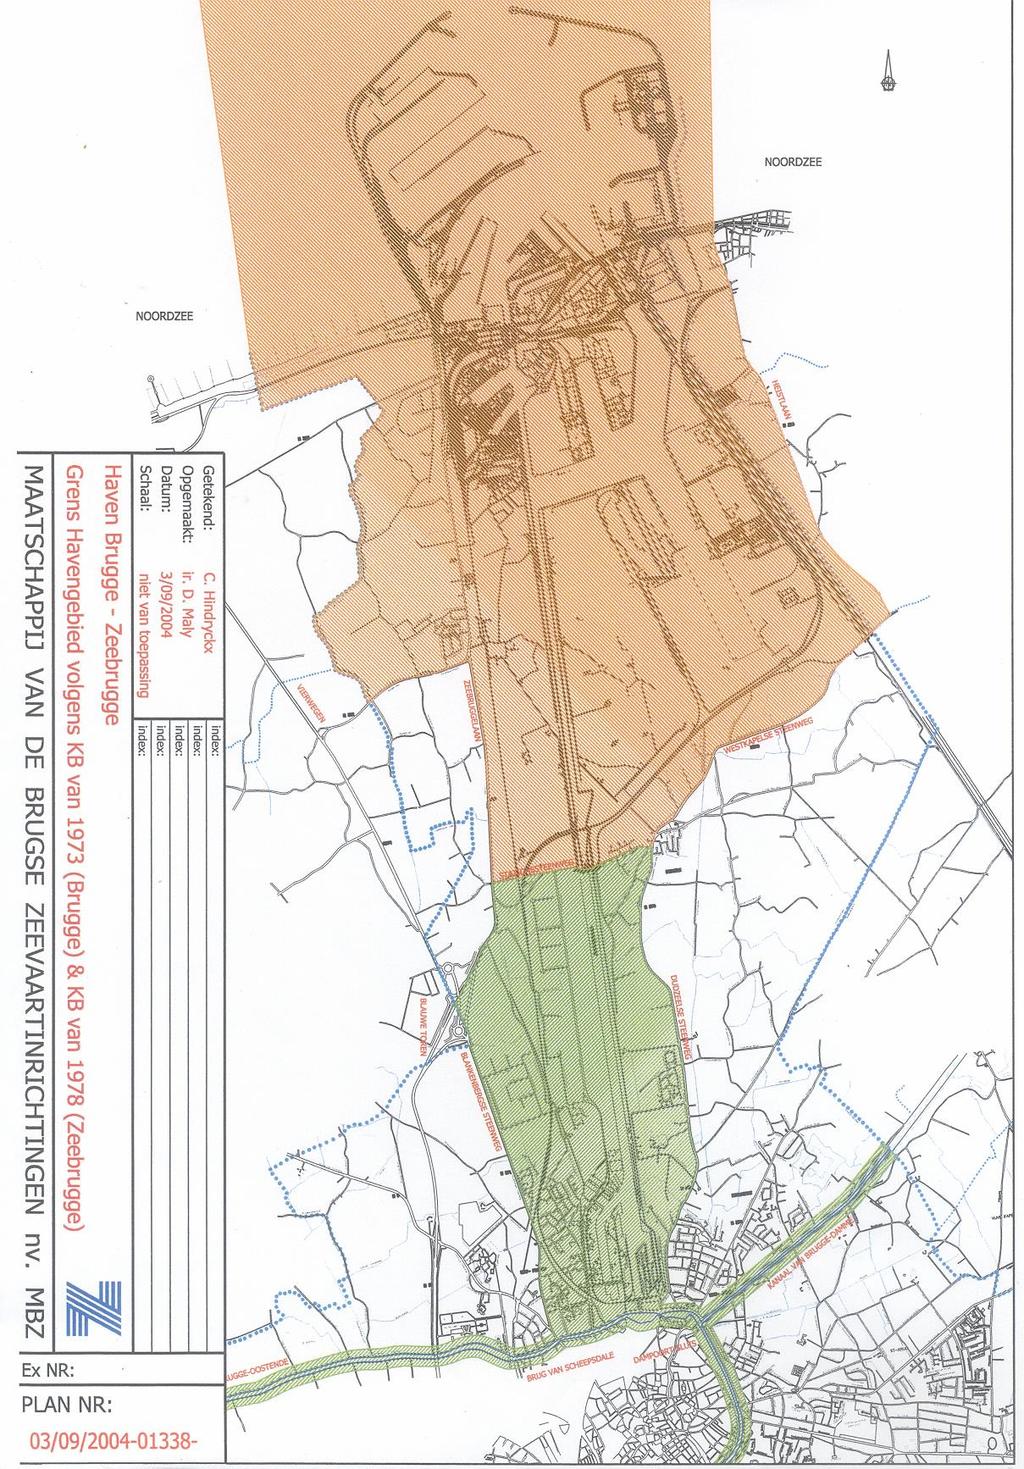 Bijlage 20 aan de Codex Plan van de haven Zeebrugge-Brugge Op de website van Cewez (www.cewez.